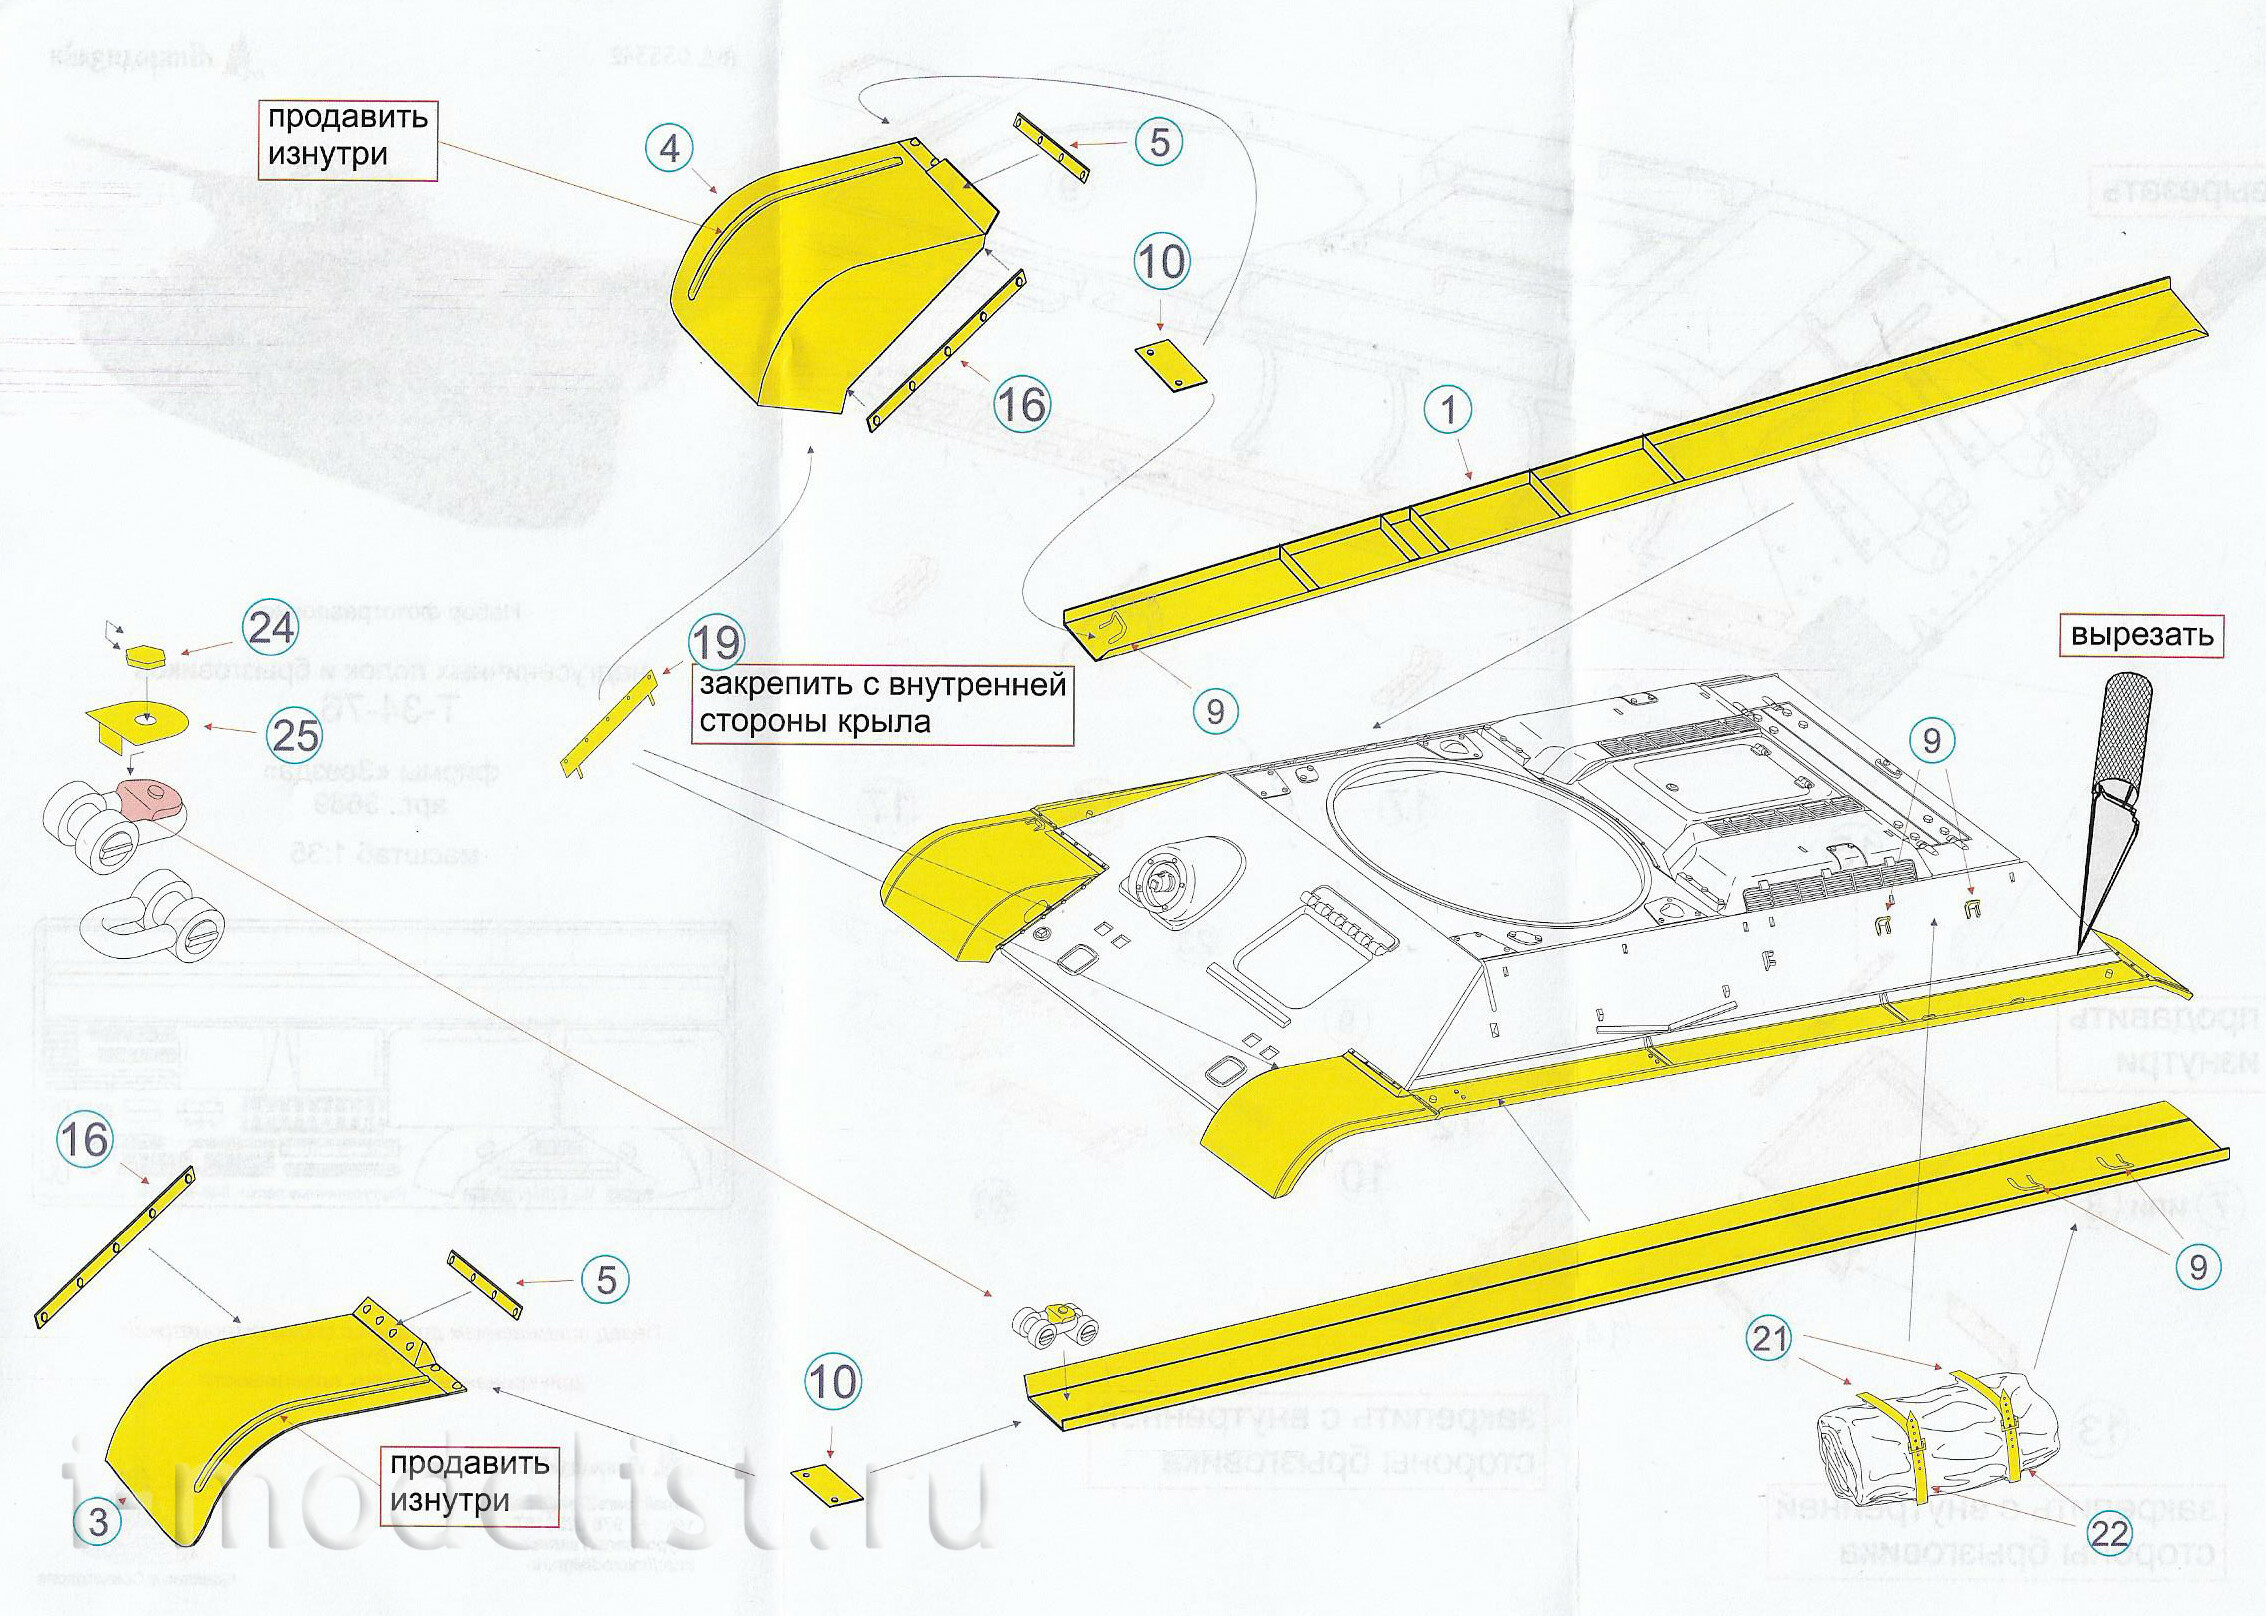 035342 Microdesign 1/35 Tank 34-76 Overhead track shelves (Zvezda)